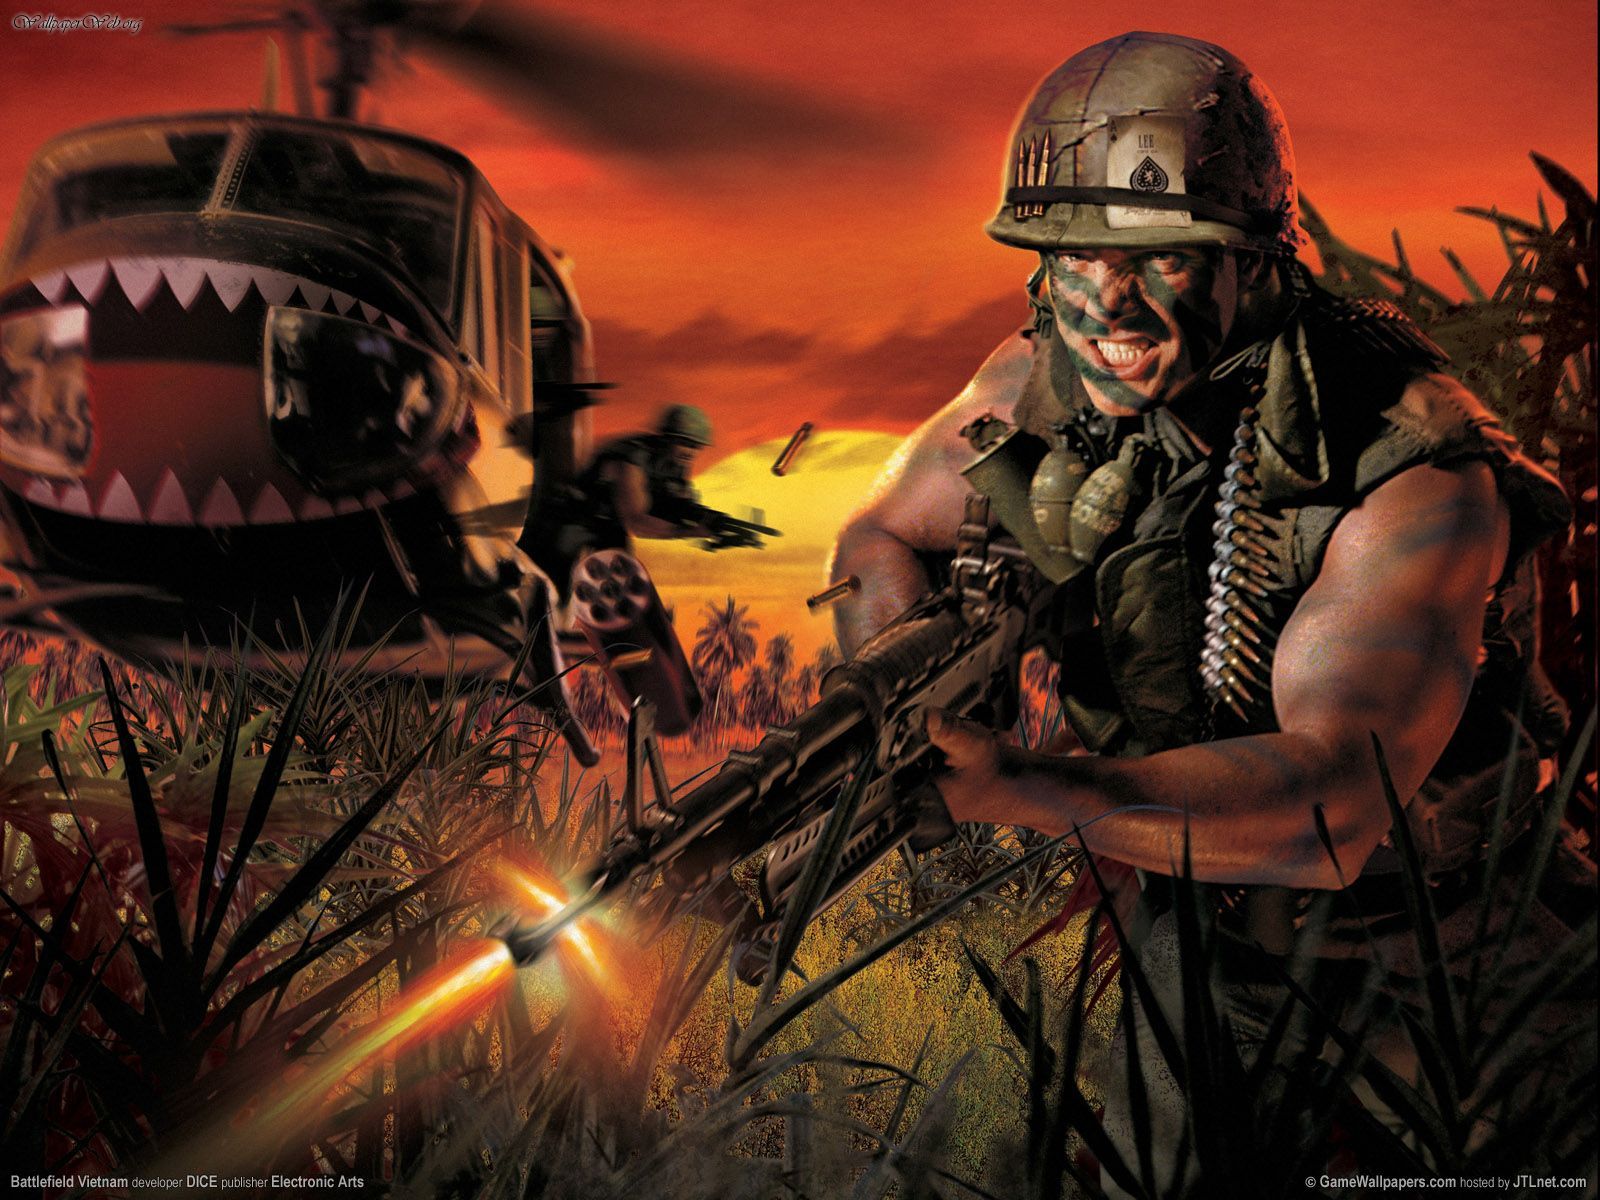 Battlefield Vietnam desktop wallpaper featuring a scenic depiction of the Vietnam War.